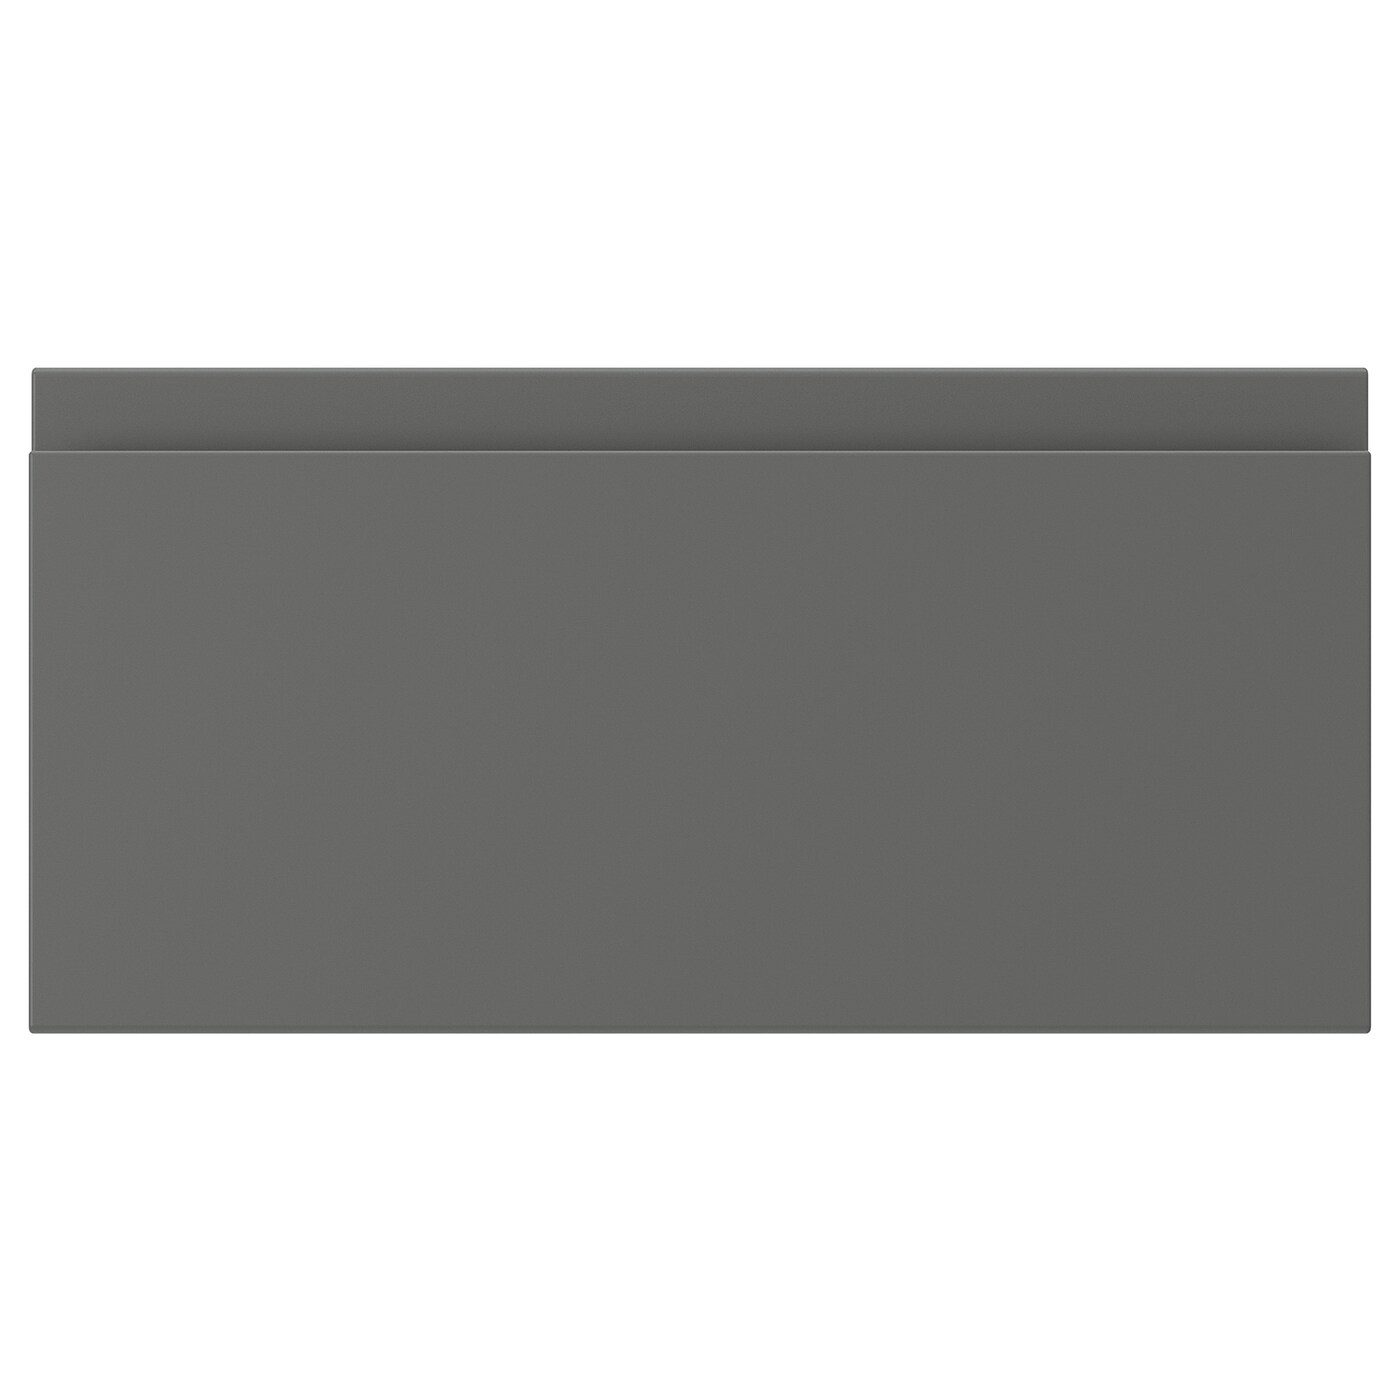 Фасад ящика - IKEA VOXTORP, 20х40 см, темно-серый, ВОКСТОРП ИКЕА